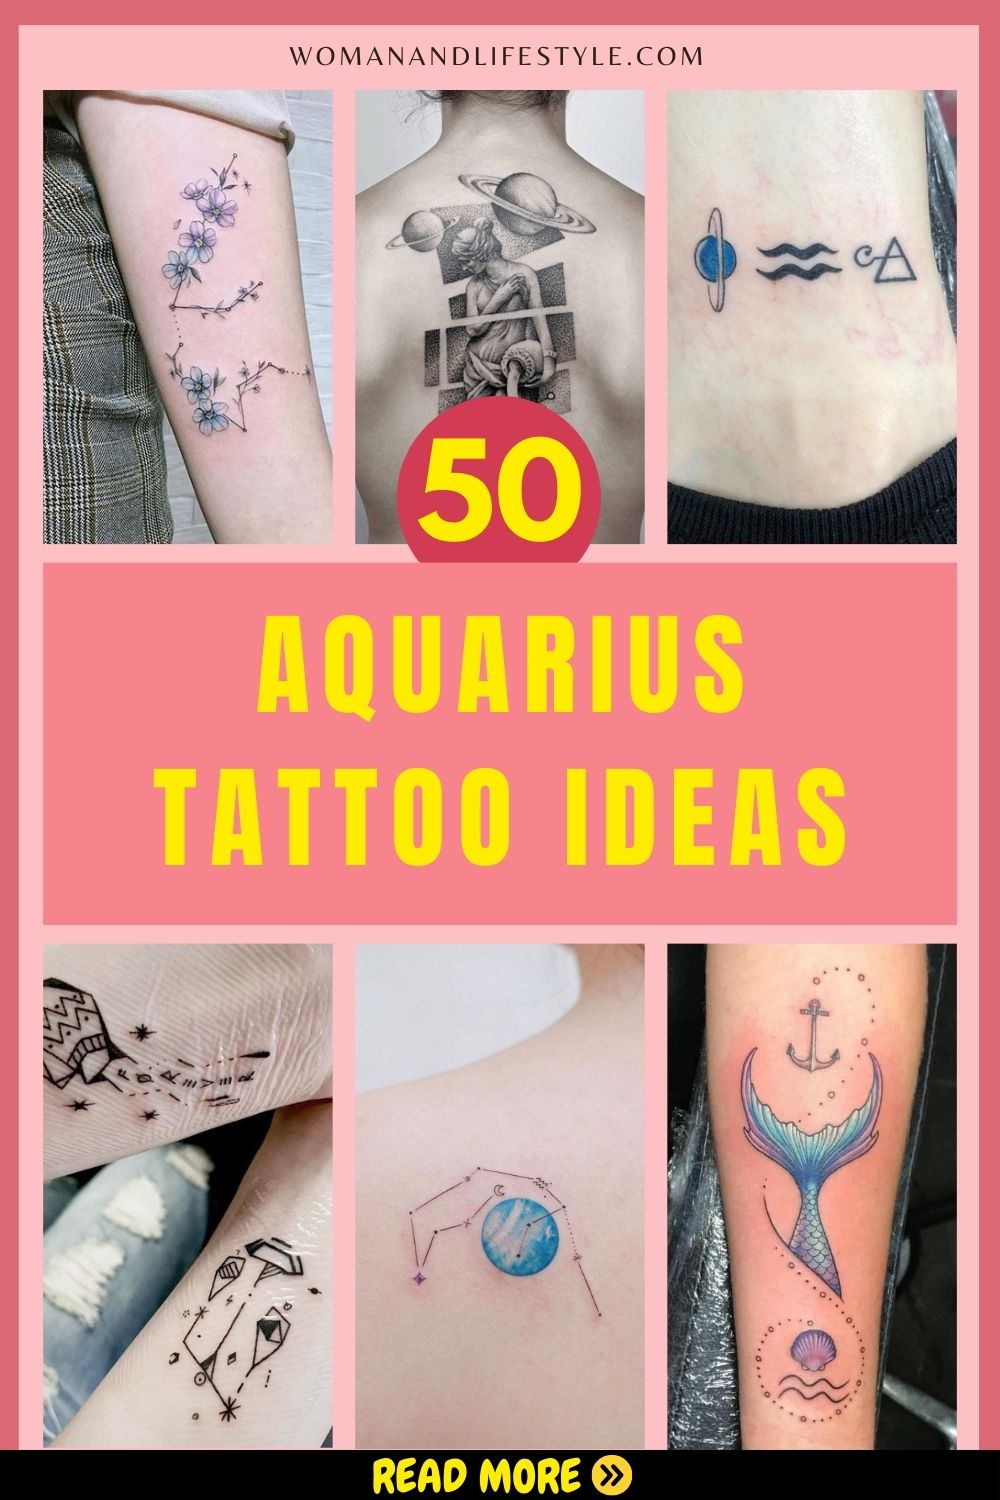 Aquarius-Tattoo-Ideas